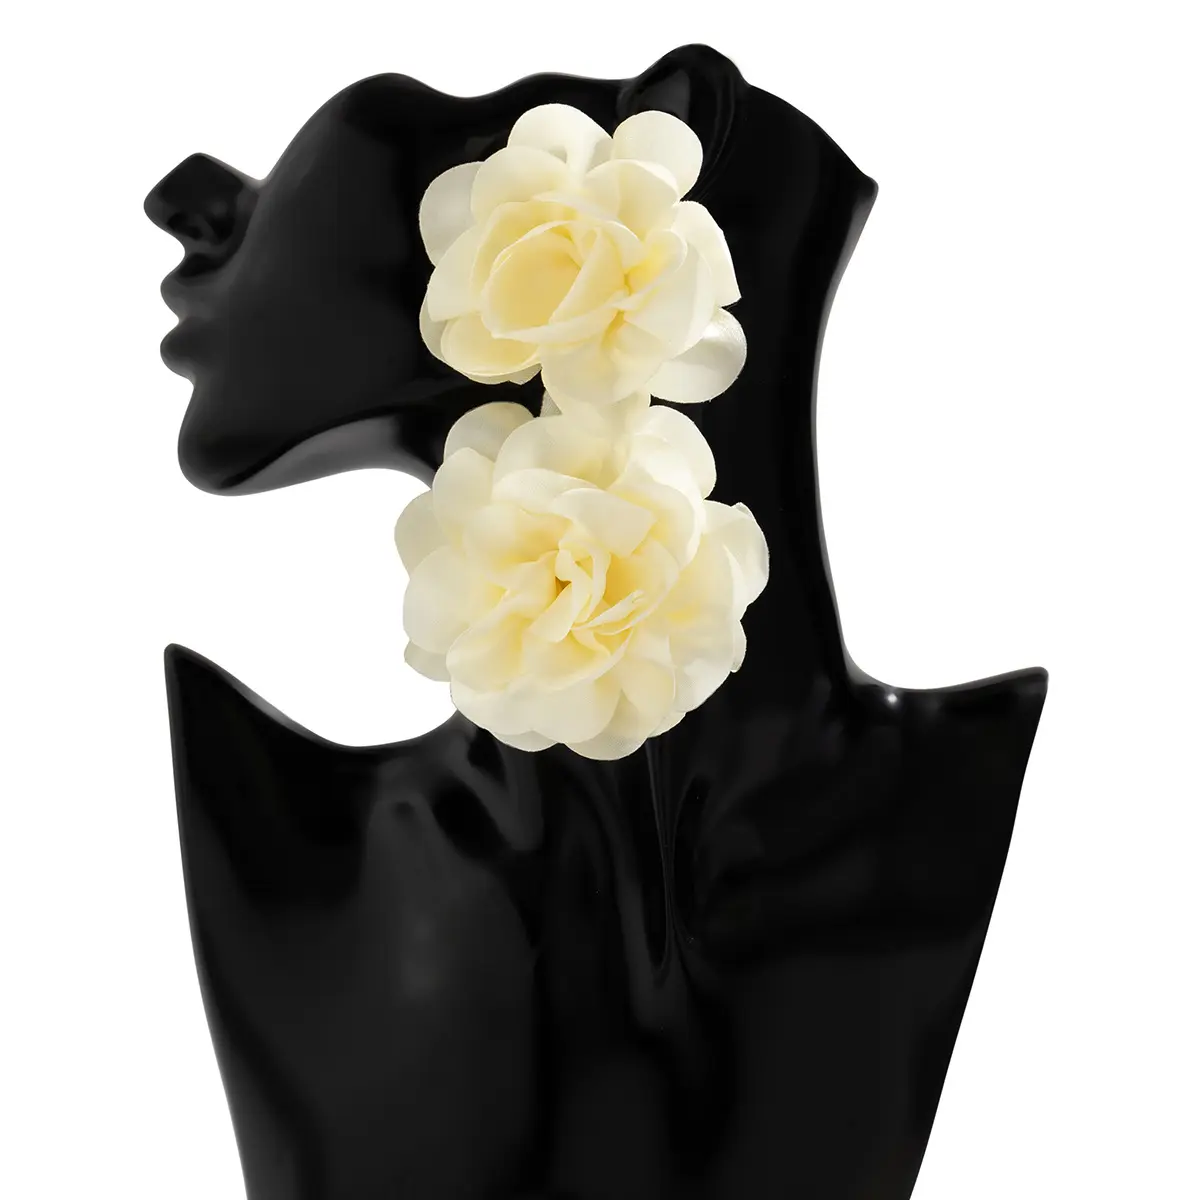 Joyería de moda, personalizados de tela de pétalos grandes pendientes largos, pendientes llamativos de flores negras coloridas para mujer, nuevos pendientes bohemios